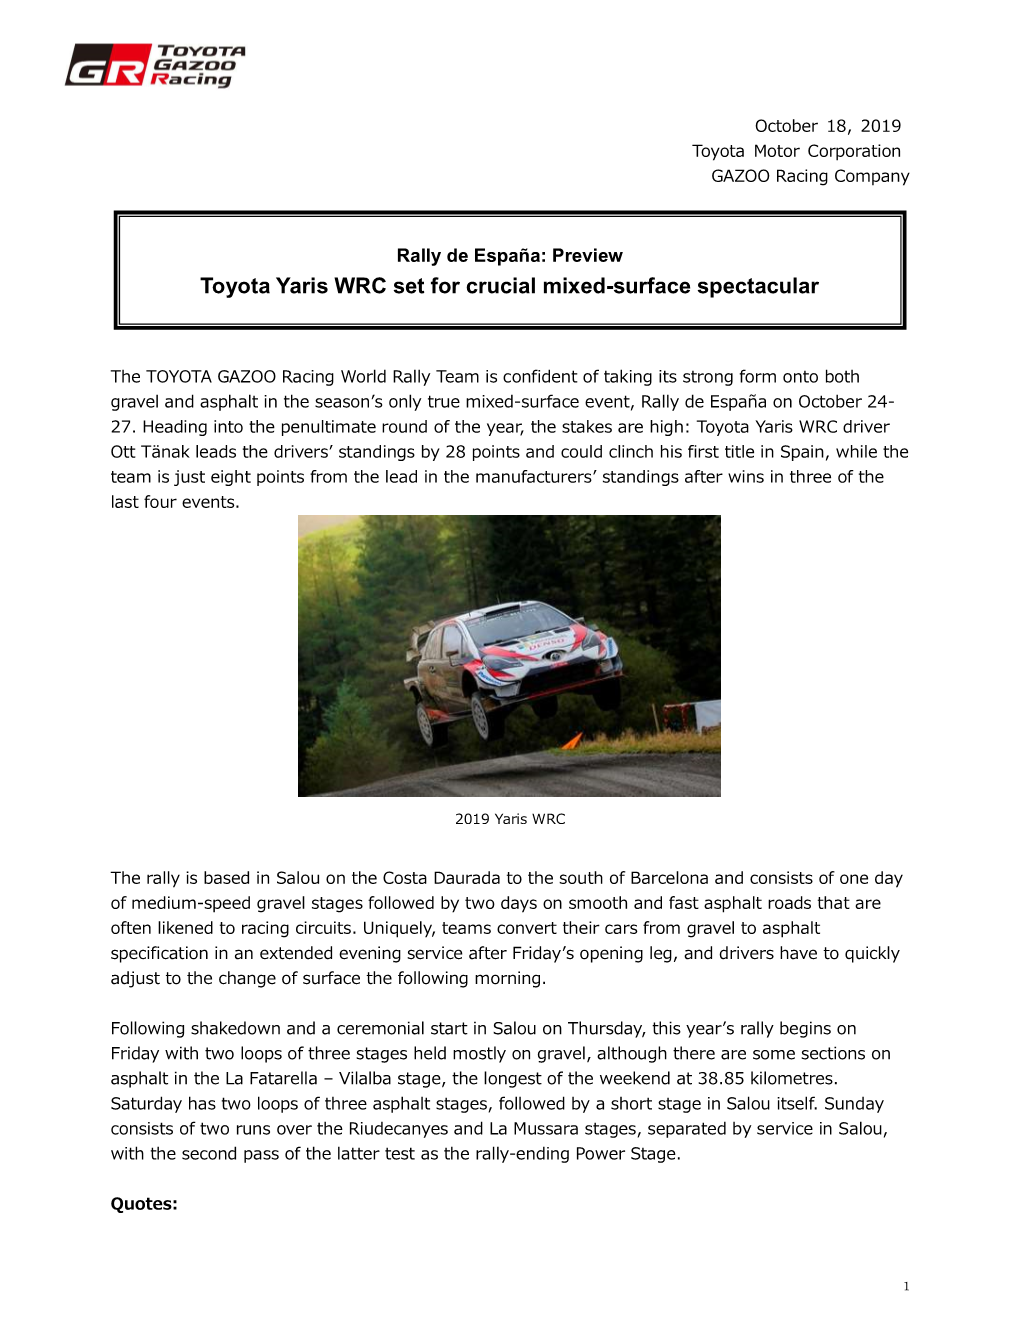 Rally De España: Preview Toyota Yaris WRC Set for Crucial Mixed-Surface Spectacular